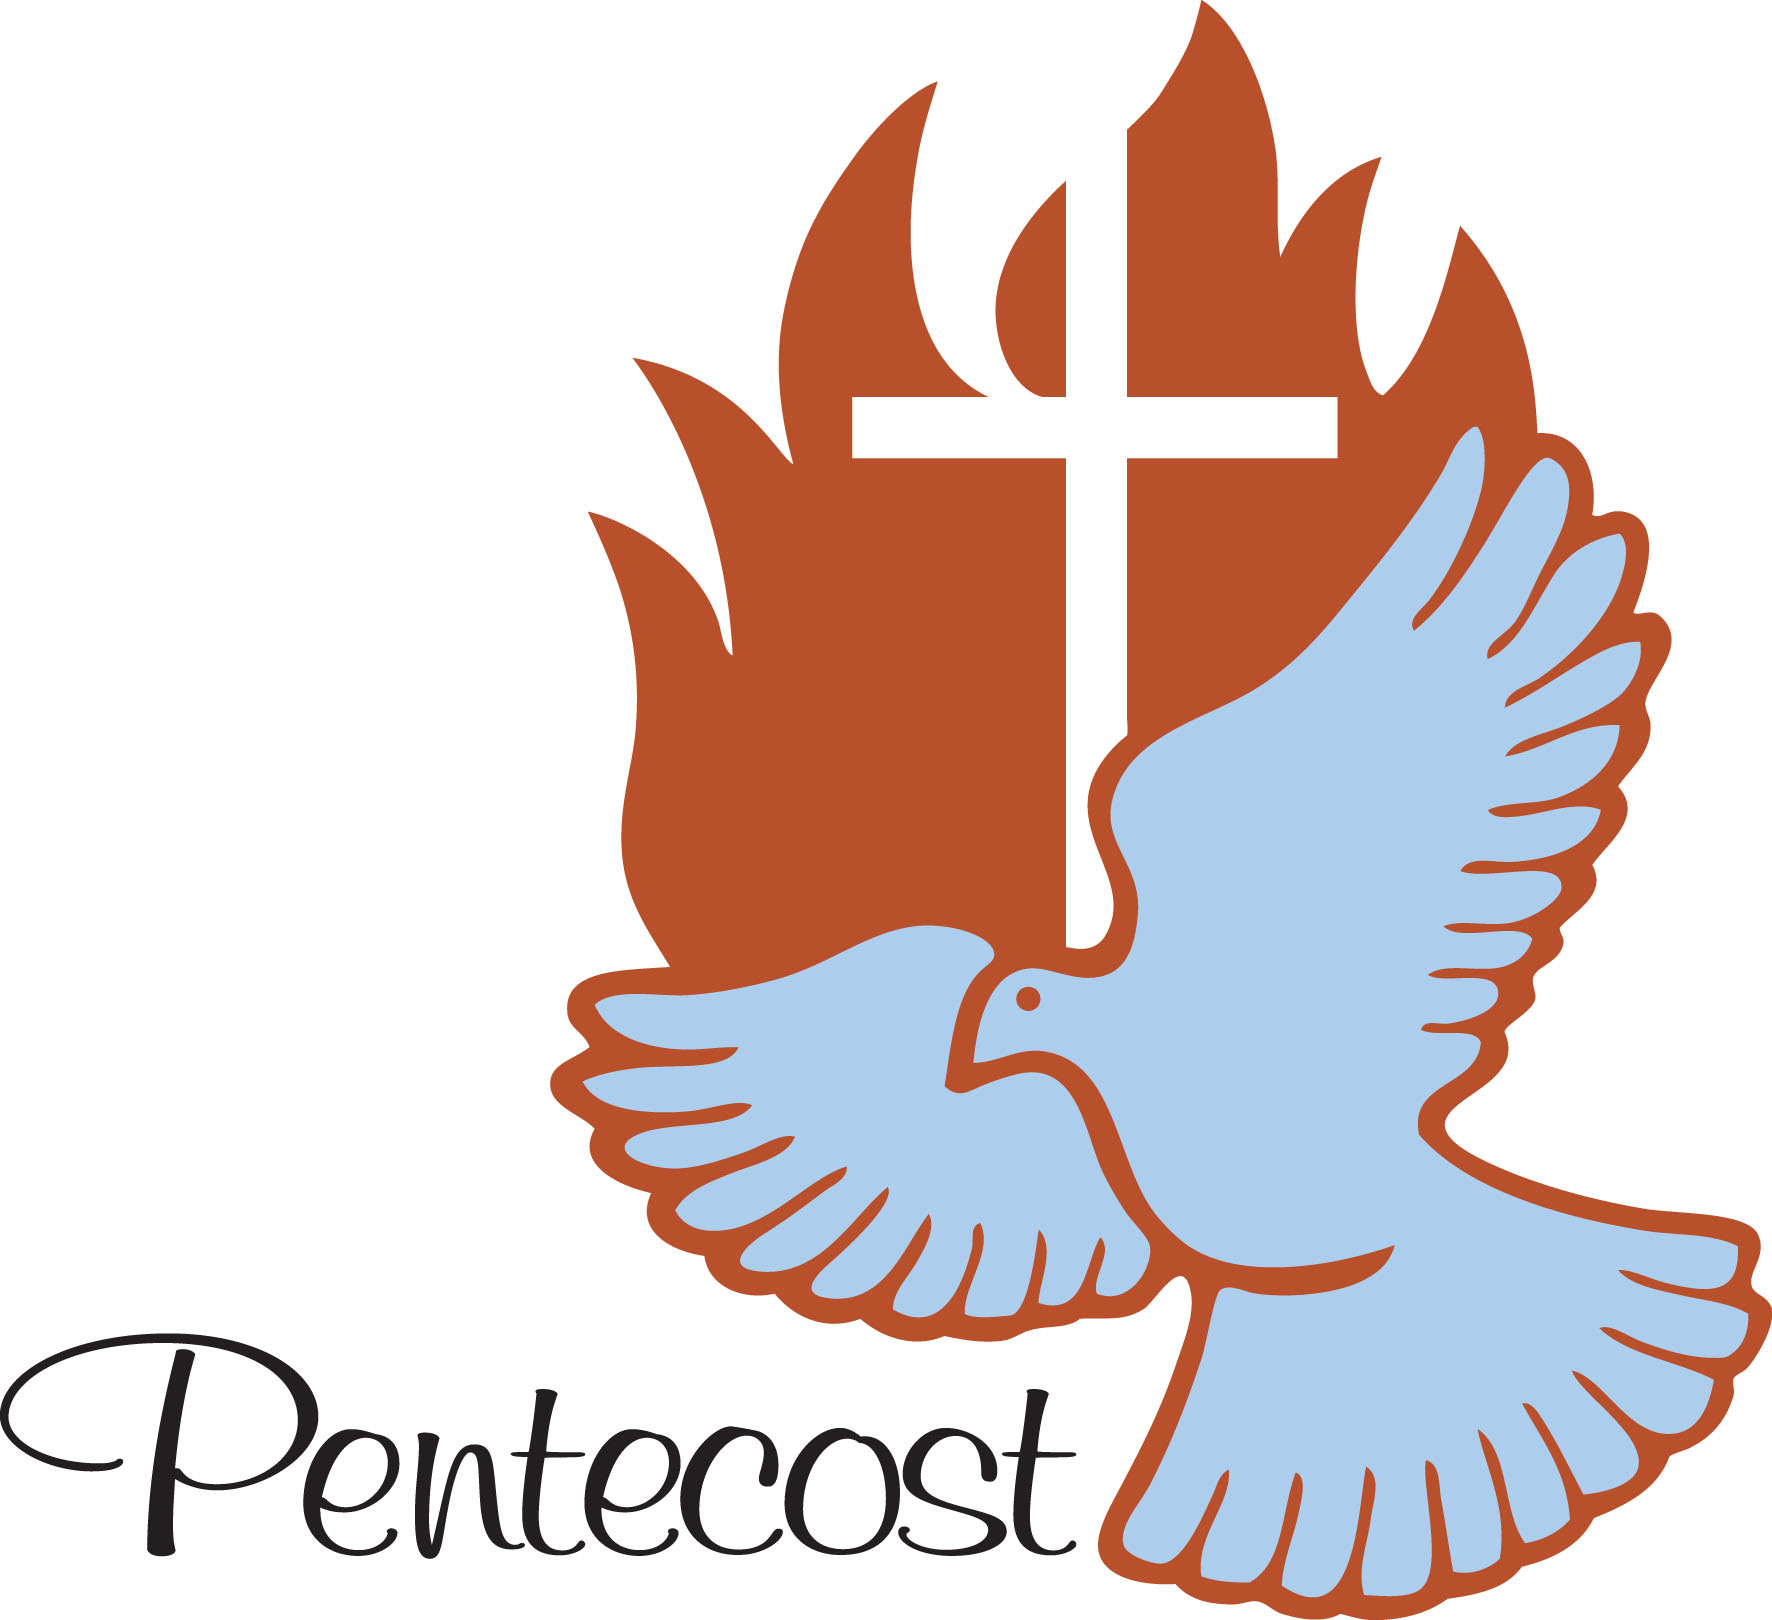 Christian clipart pentecost